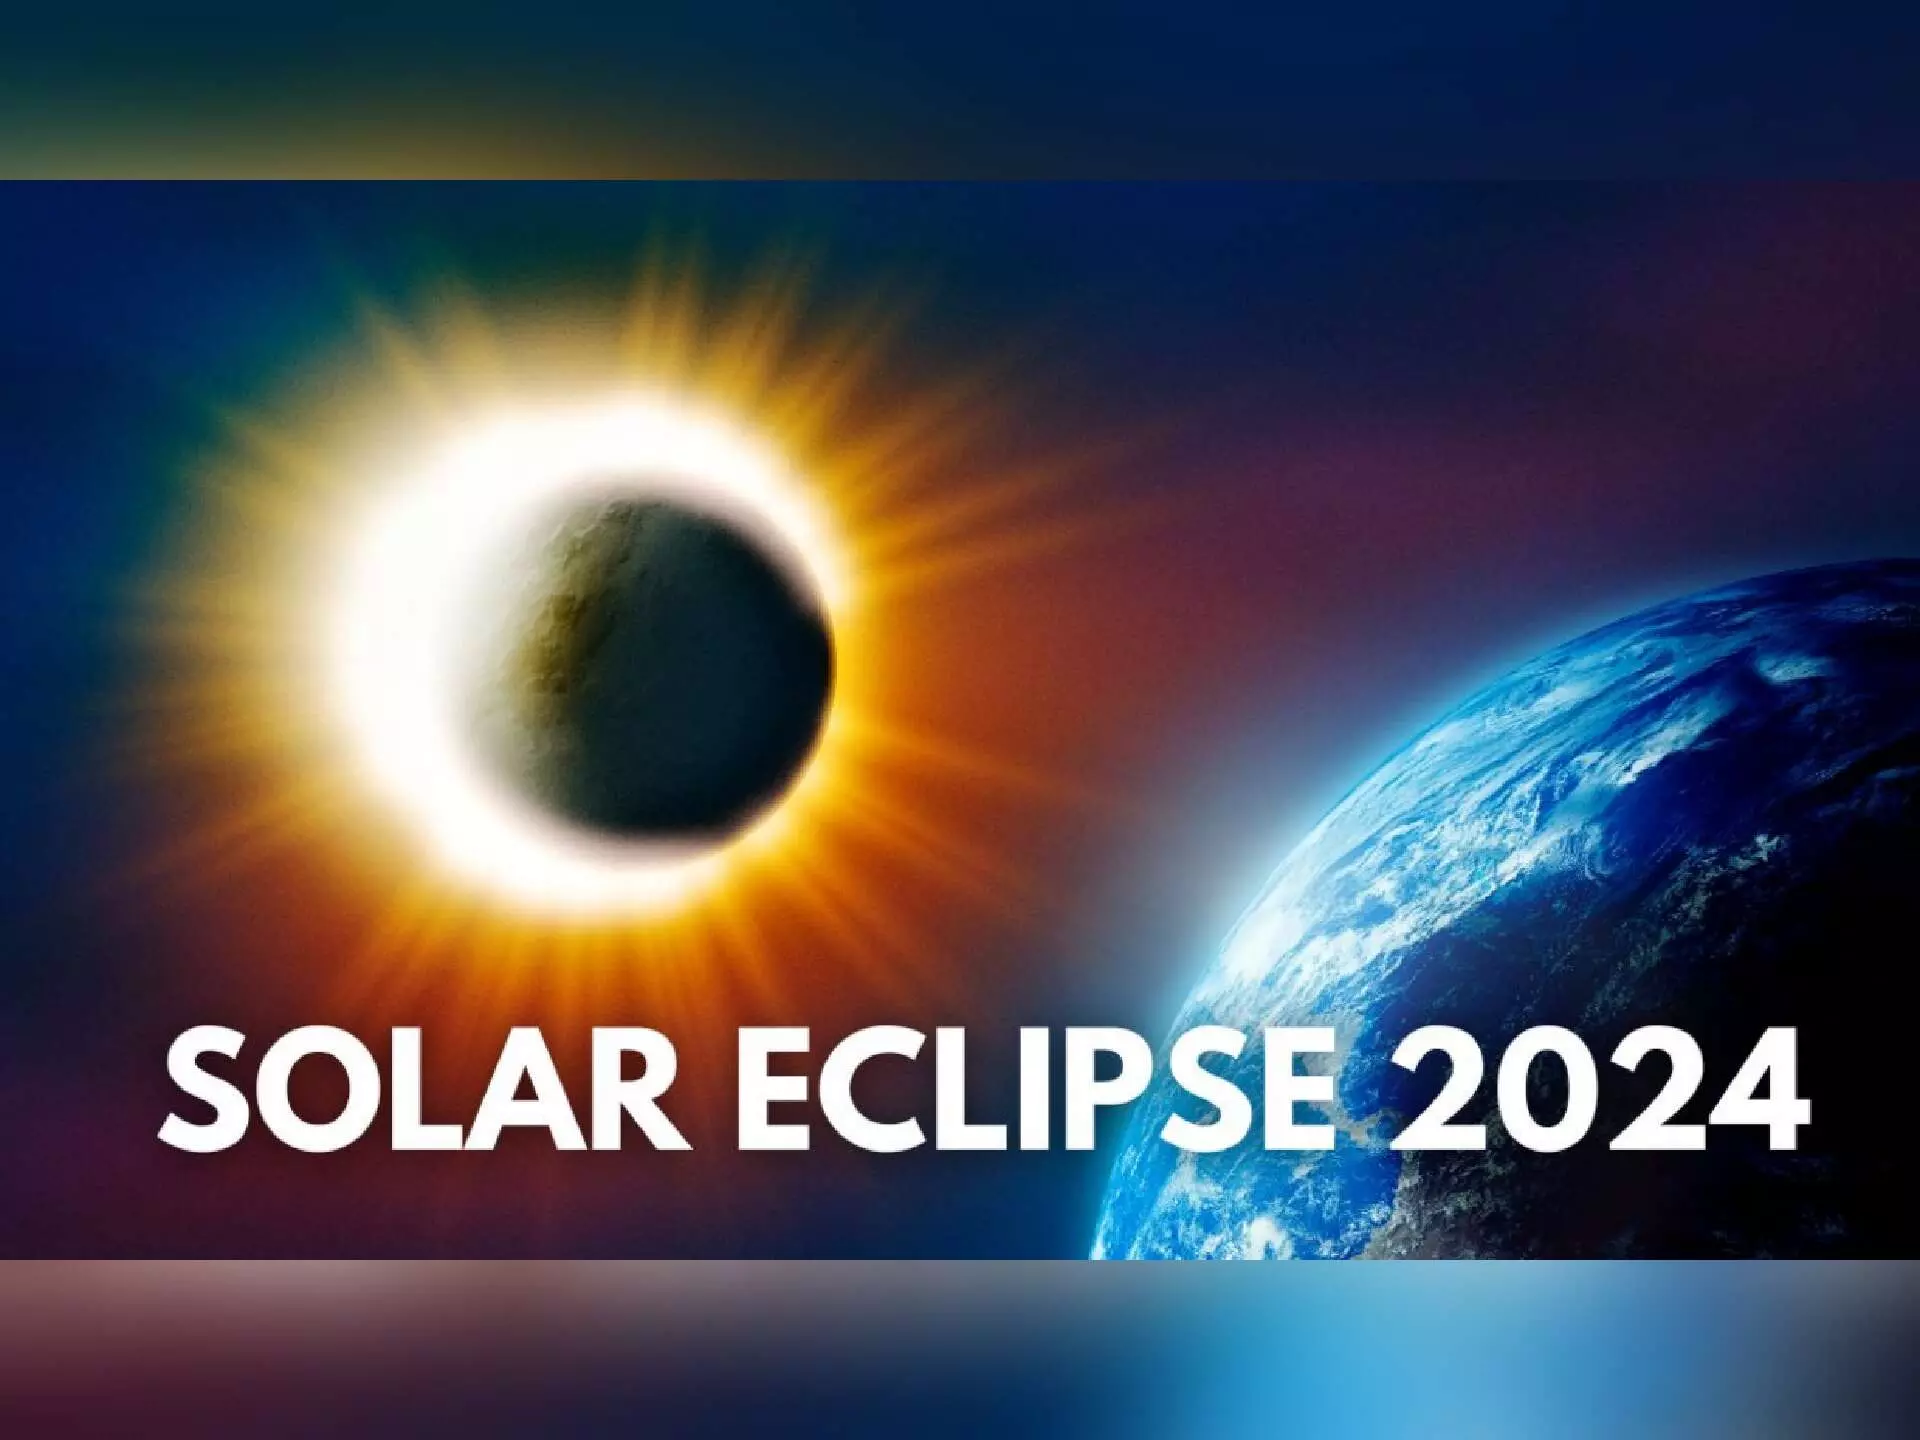 Solar Eclipse 2024 : इस दिन लगने जा रहा साल का पहला सूर्य ग्रहण, जानिए भारत में दिखेगा या नहीं?